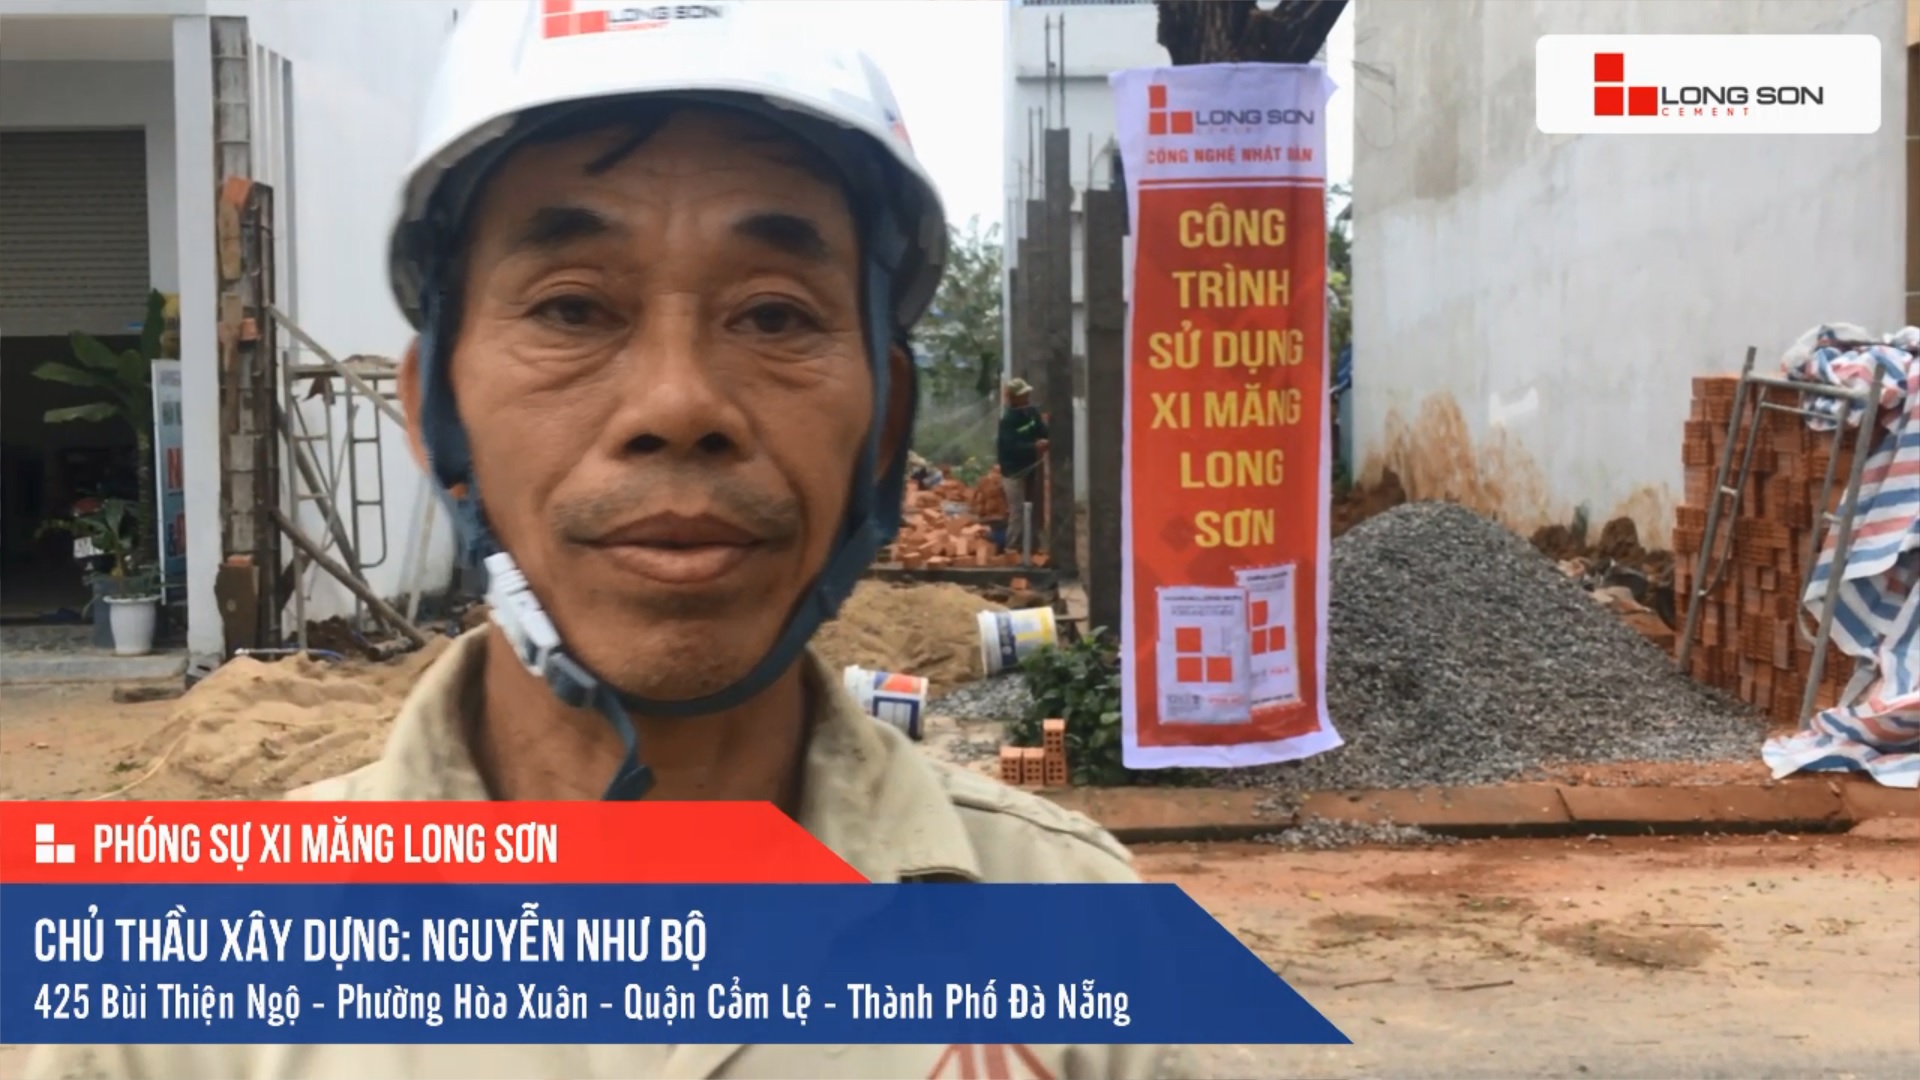 Phóng sự công trình sử dụng Xi măng Long Sơn tại Đà Nẵng 14.12.2020